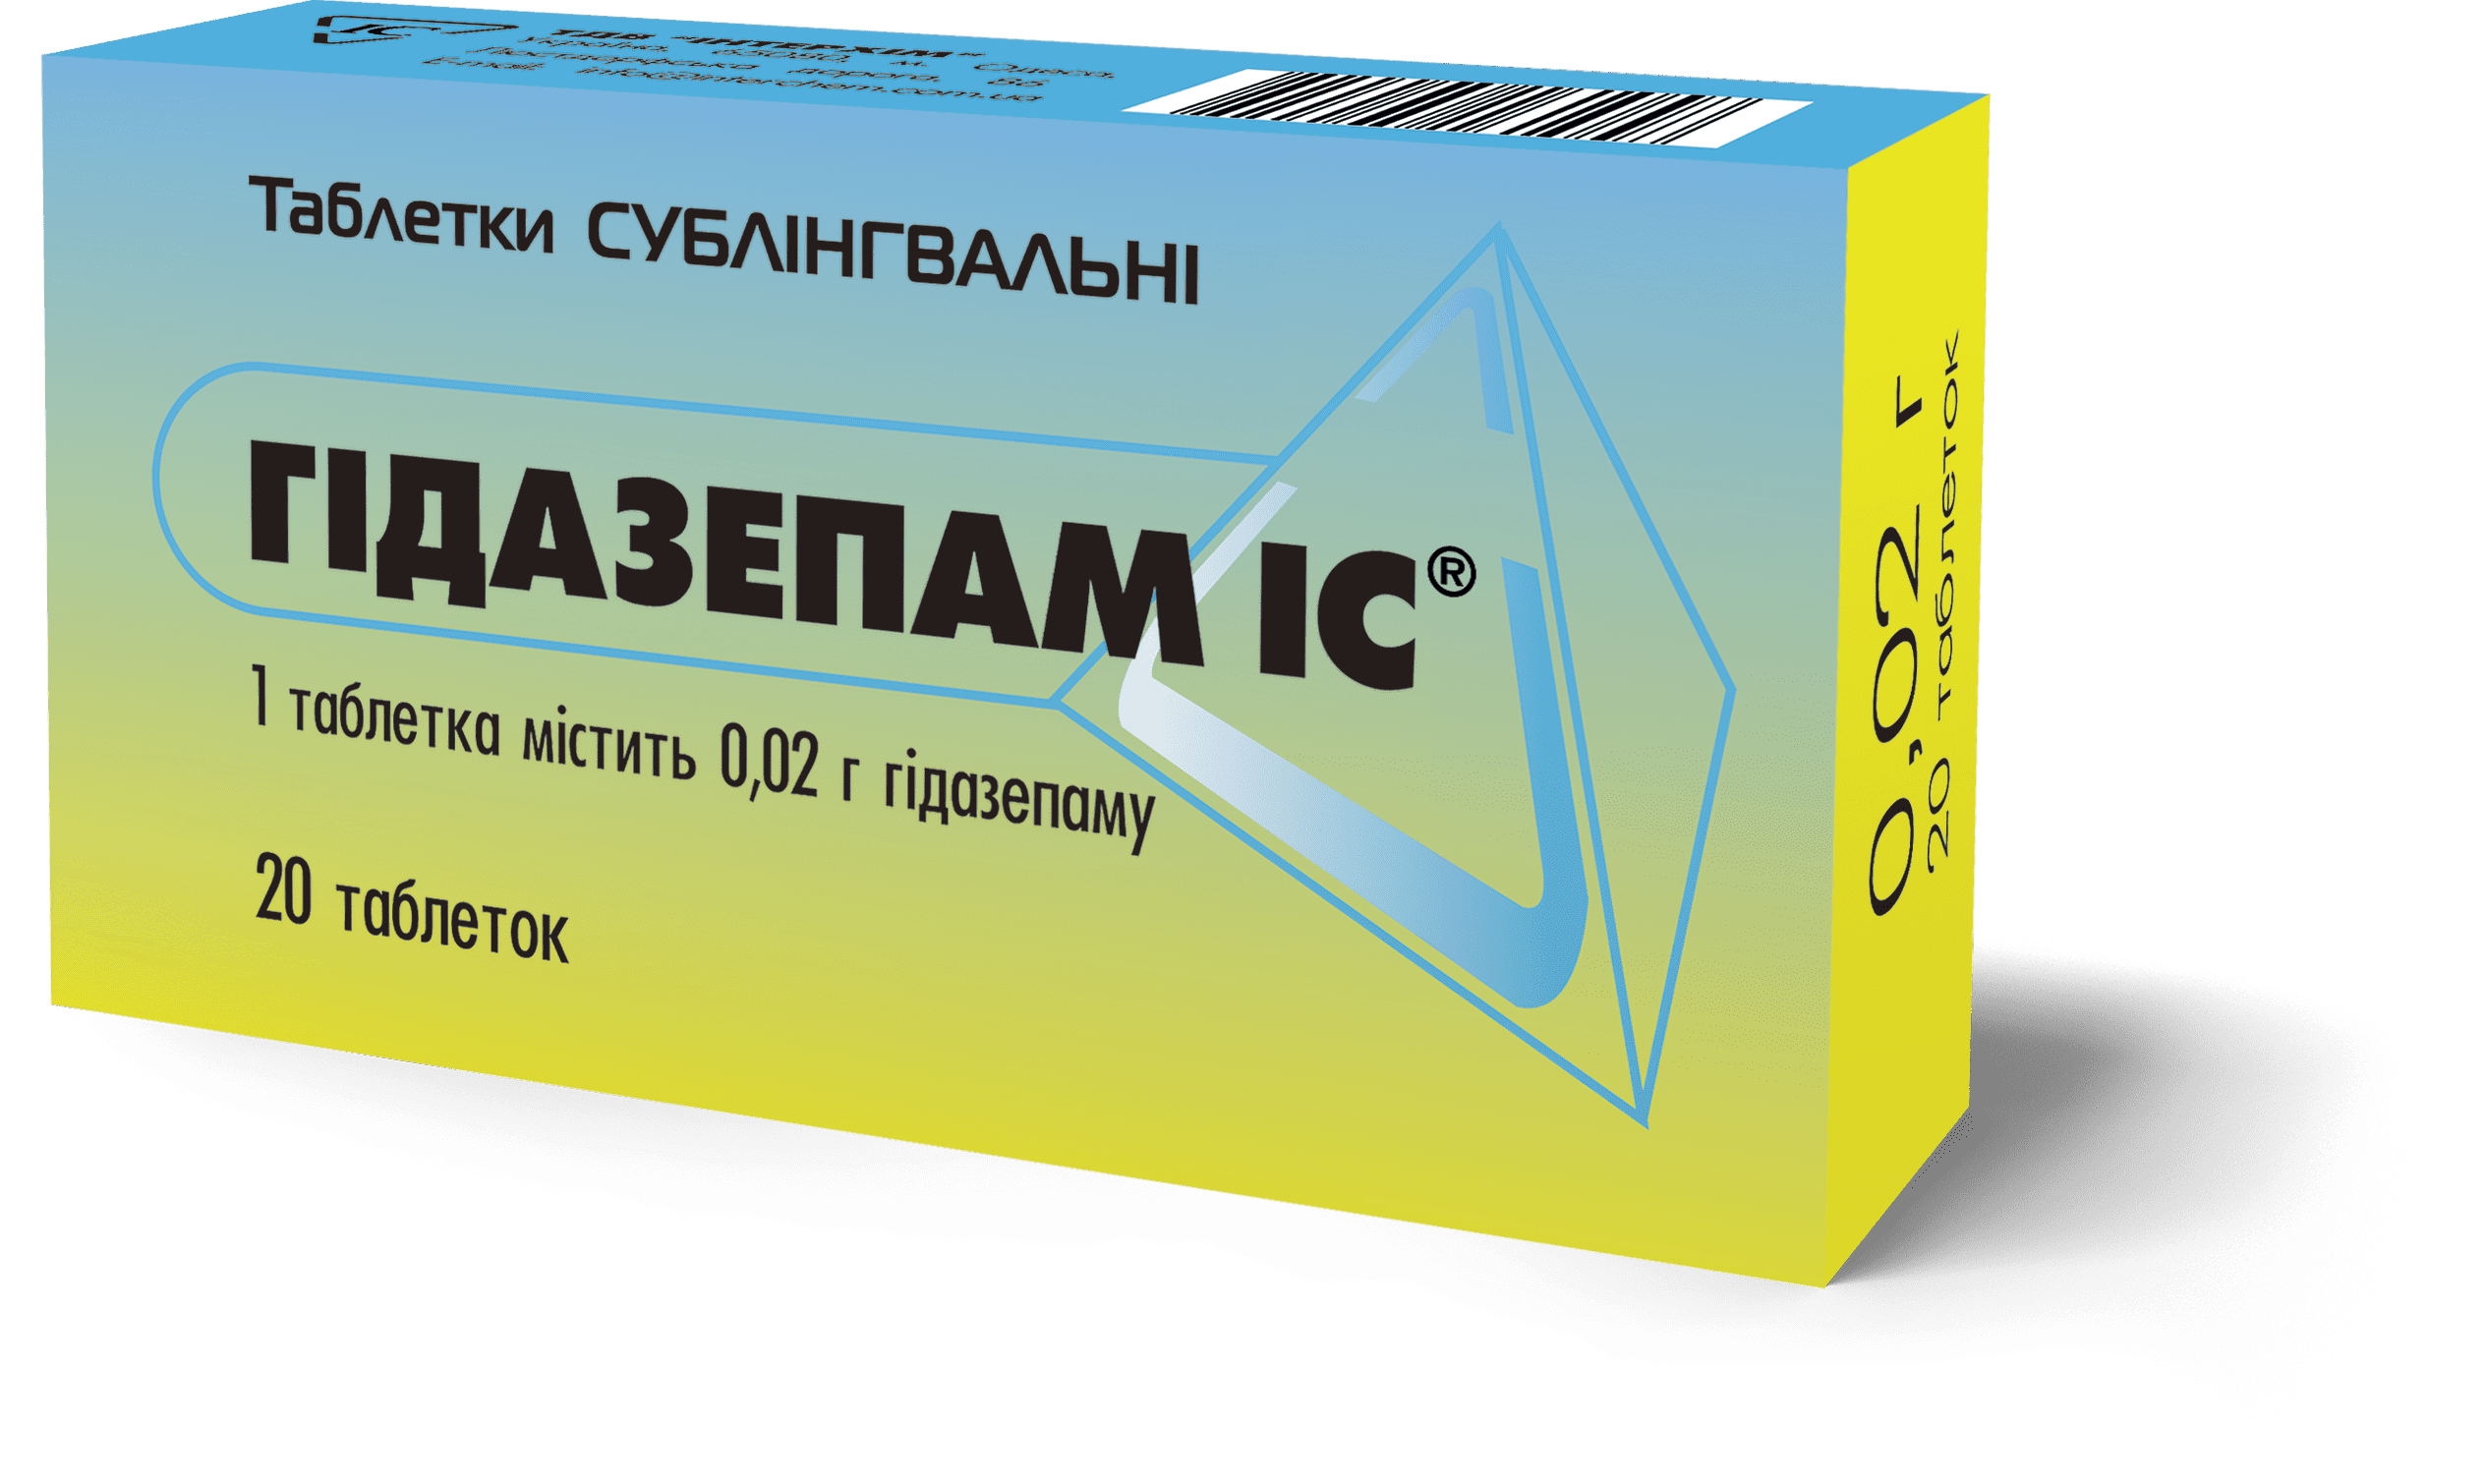 Гидазепам IC таблетки сублингвальные по 20 мг, 20 шт.: инструкция, цена .